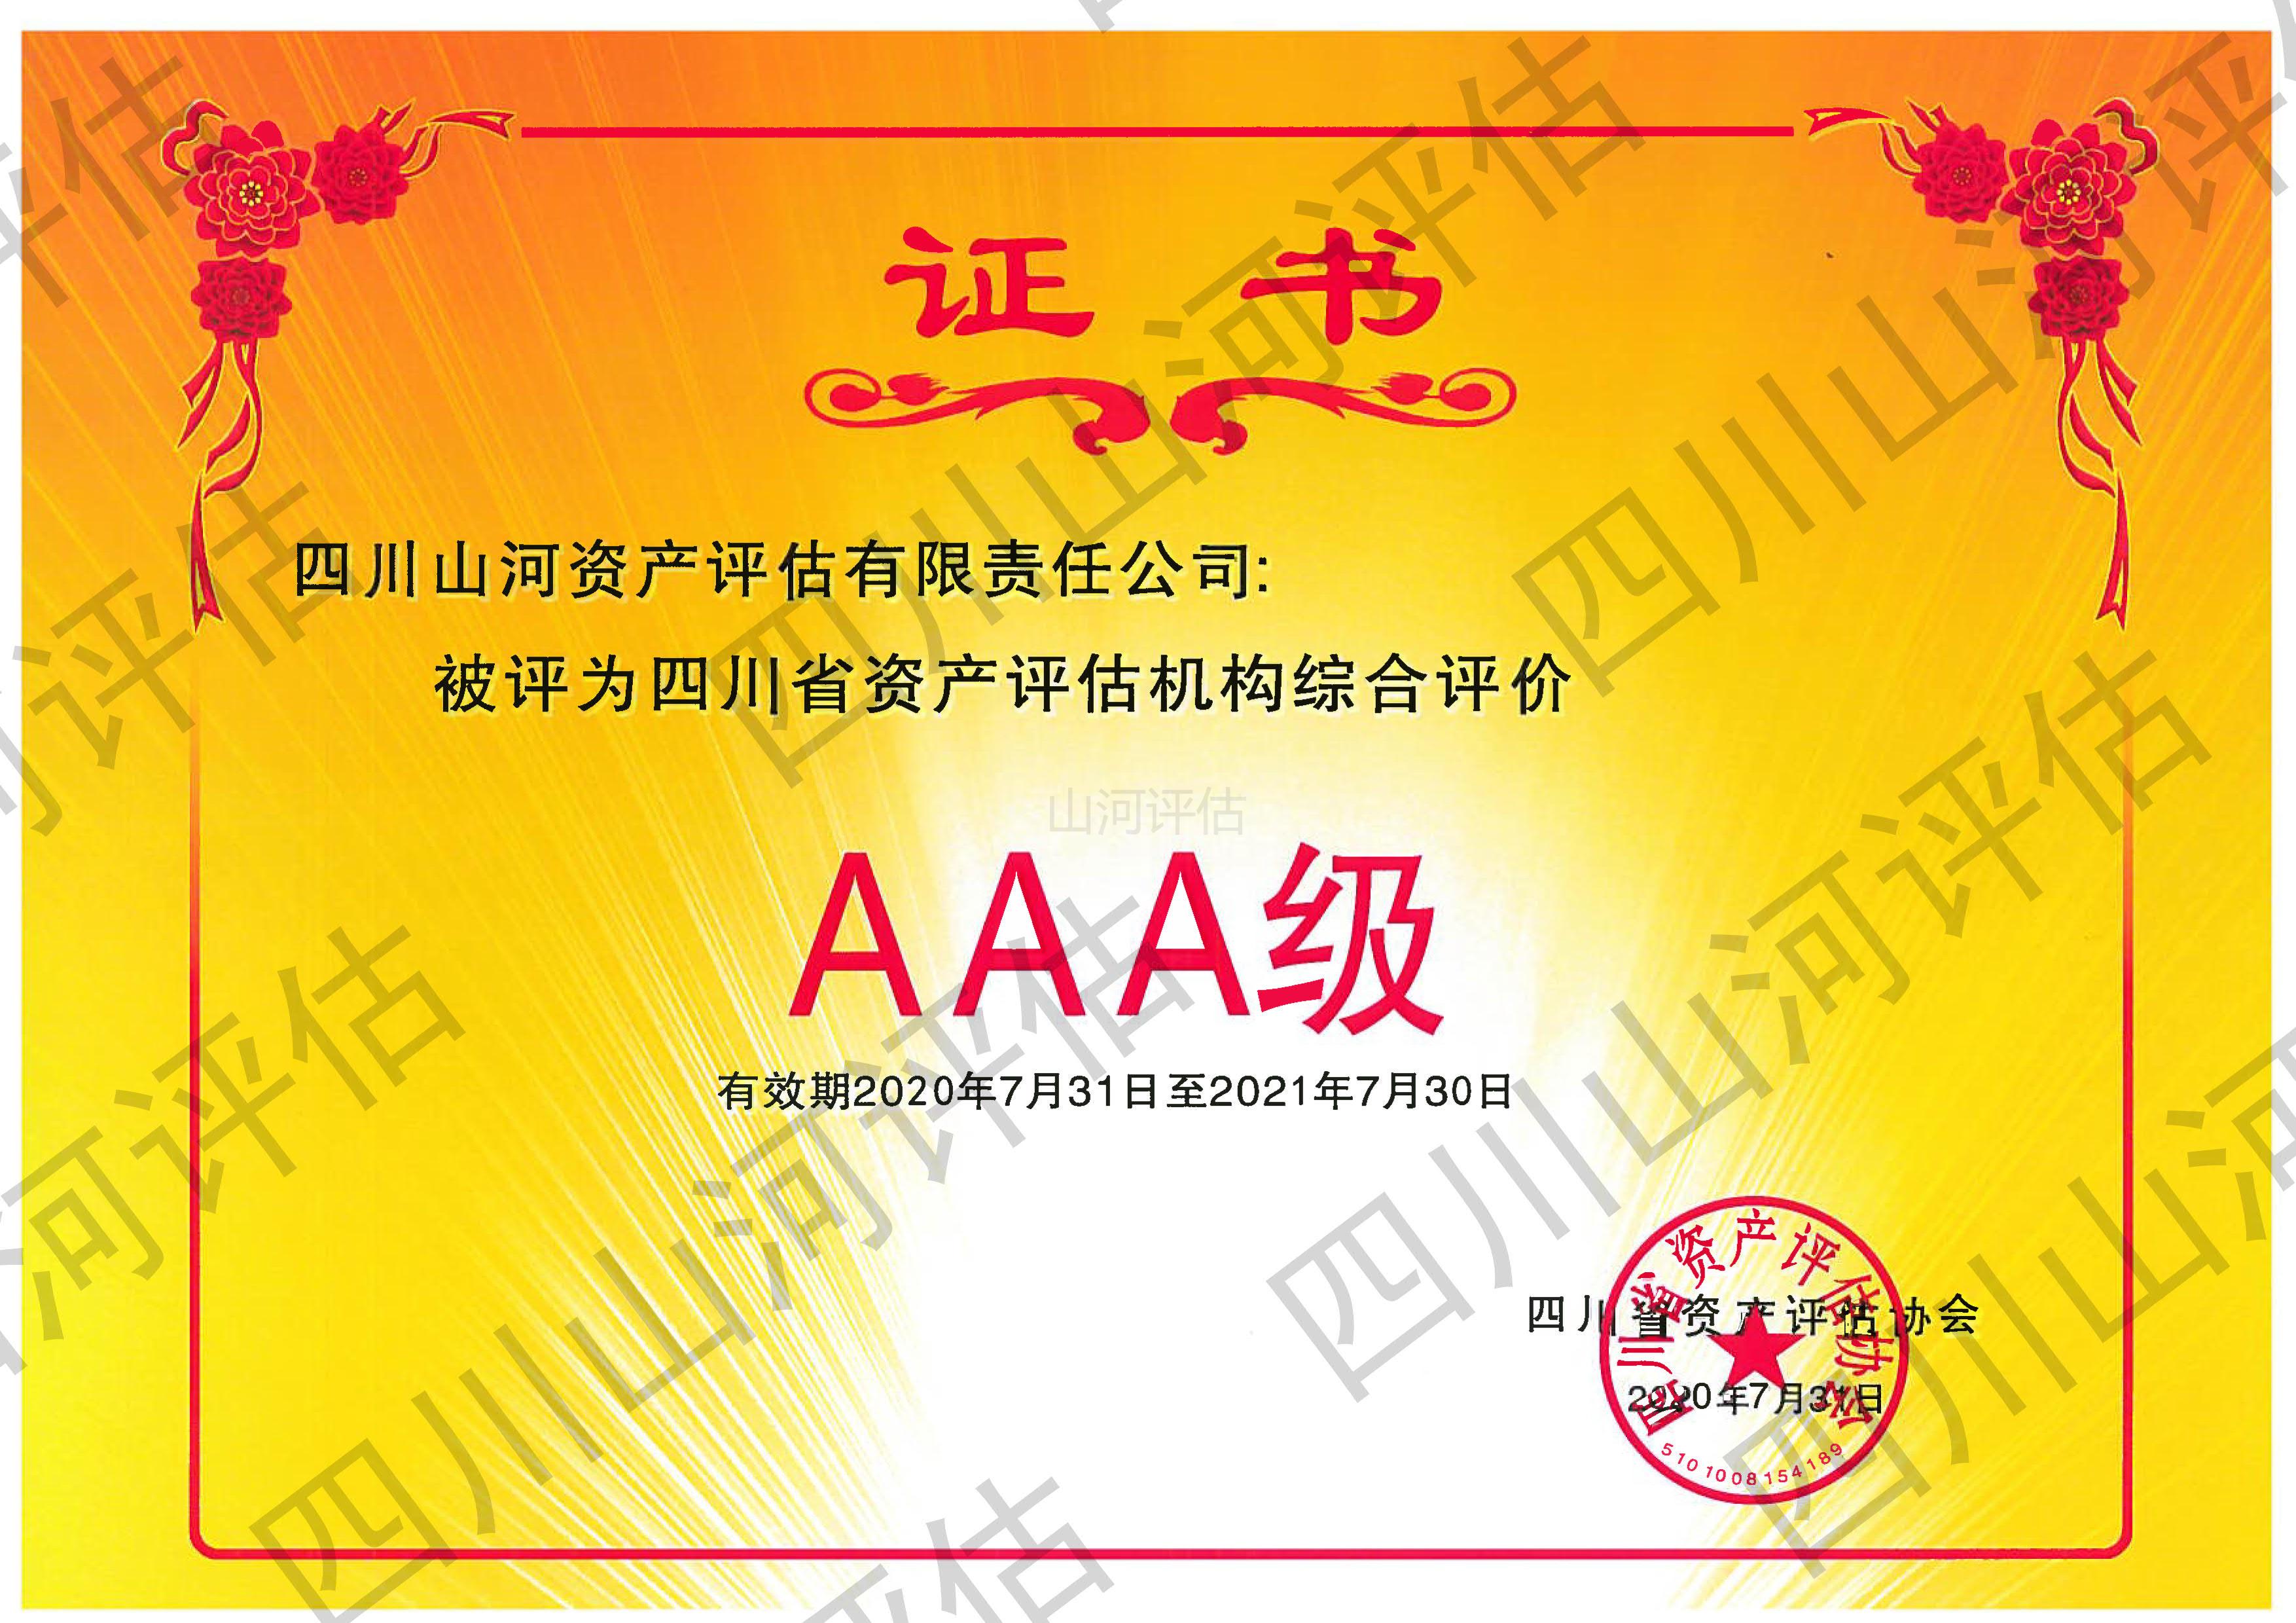 资产评估行业AAA证书